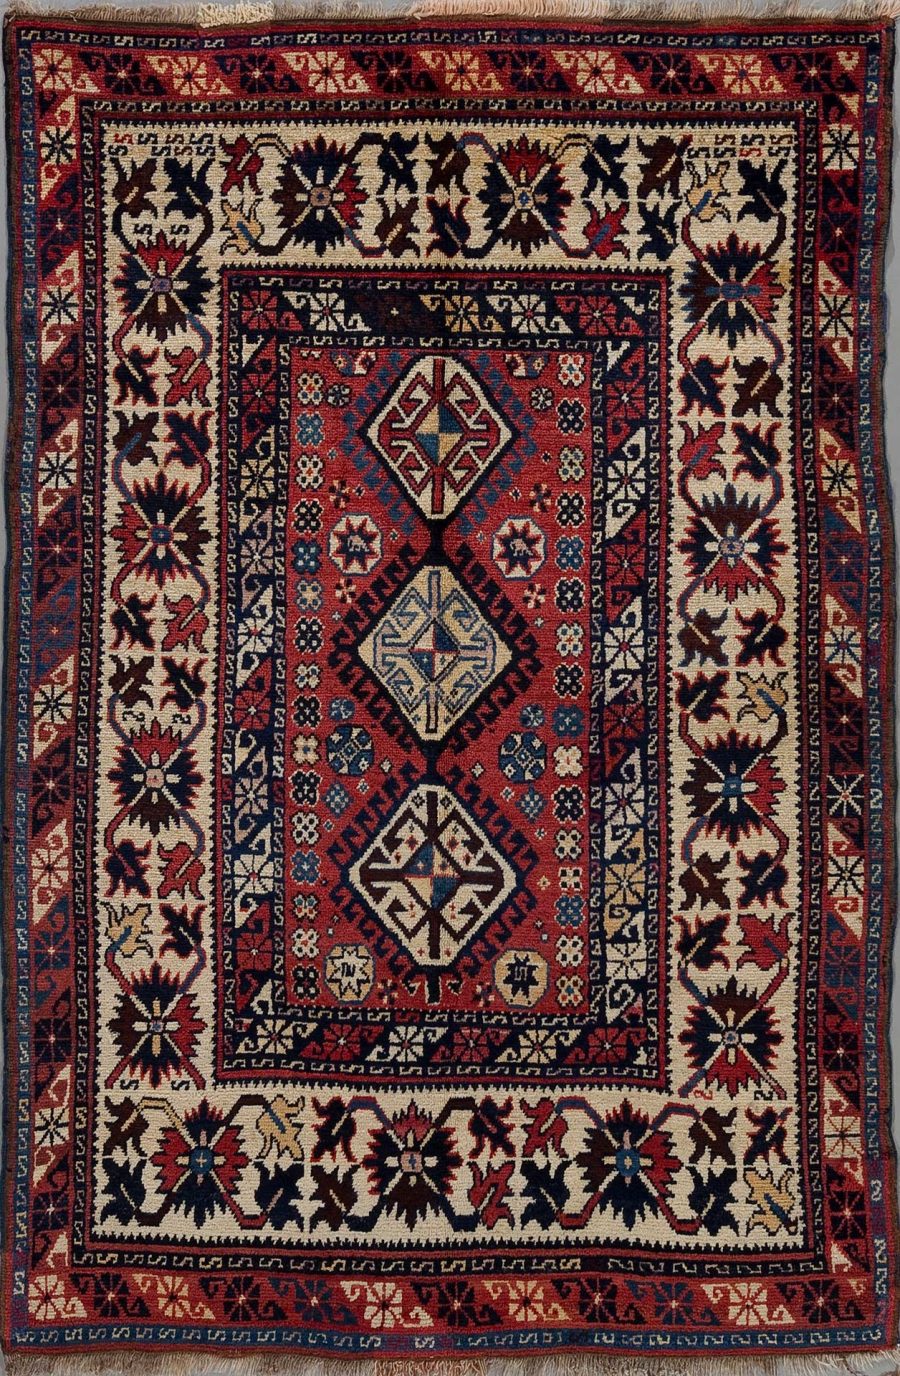 Detaillierter handgeknüpfter Teppich mit traditionellem persischem Muster in den Farben Rot, Blau, Schwarz und Beige mit zentralen geometrischen Motiven und einer umlaufenden Bordüre.